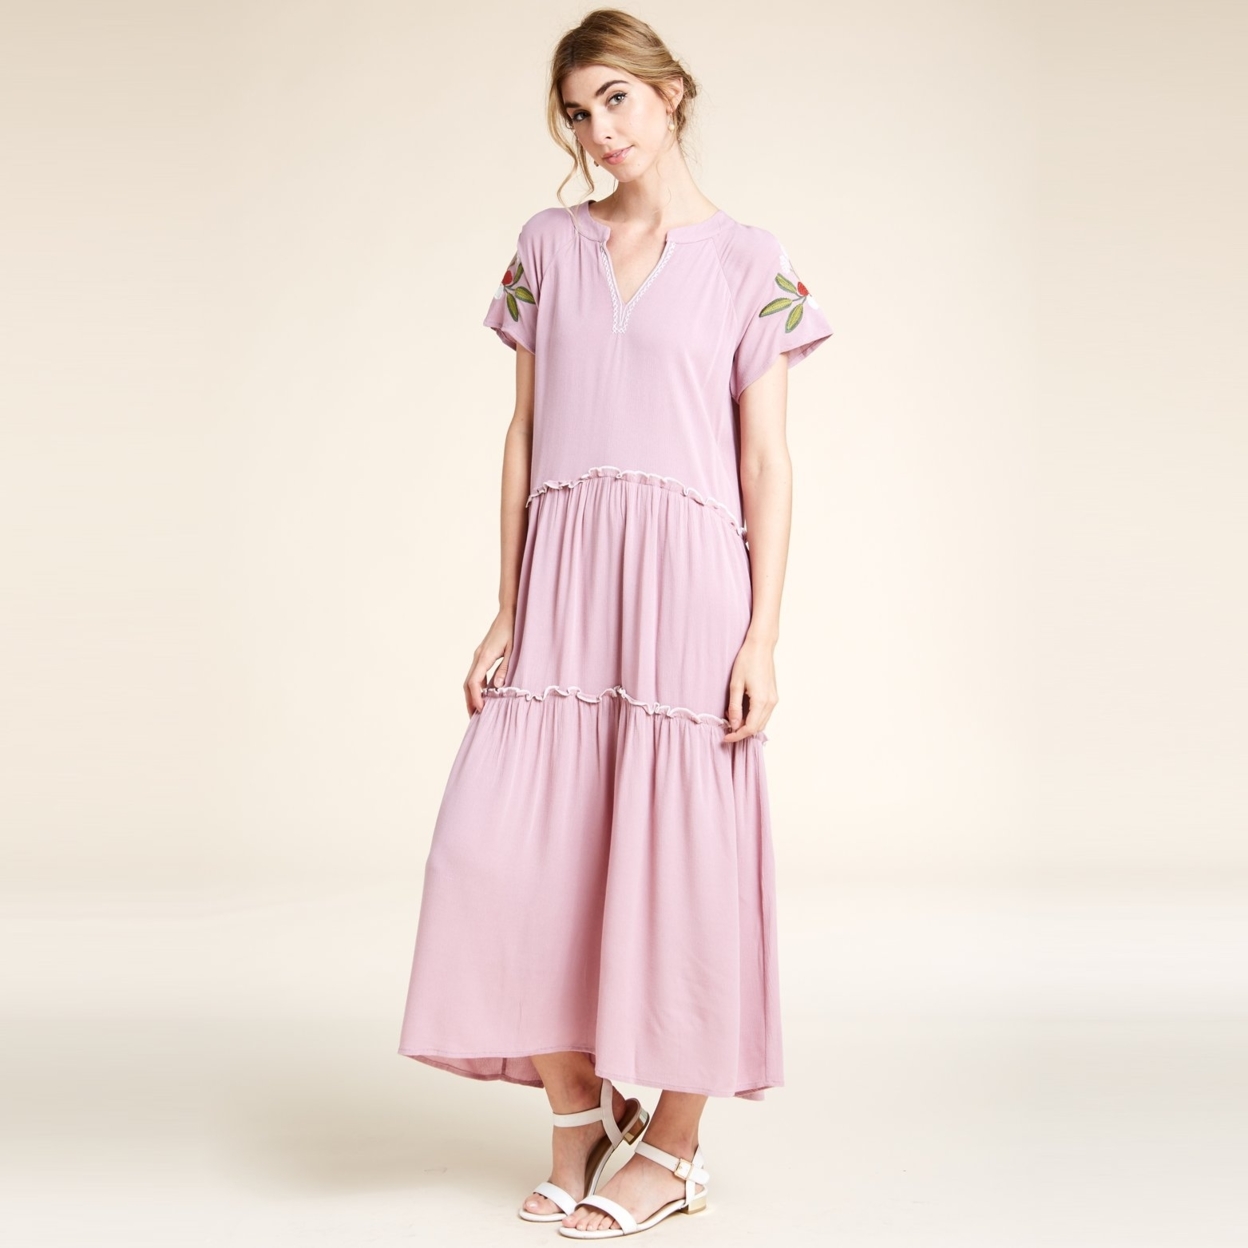 Embroidery Weekend Getaway Dress - Pink, Medium (8-10)